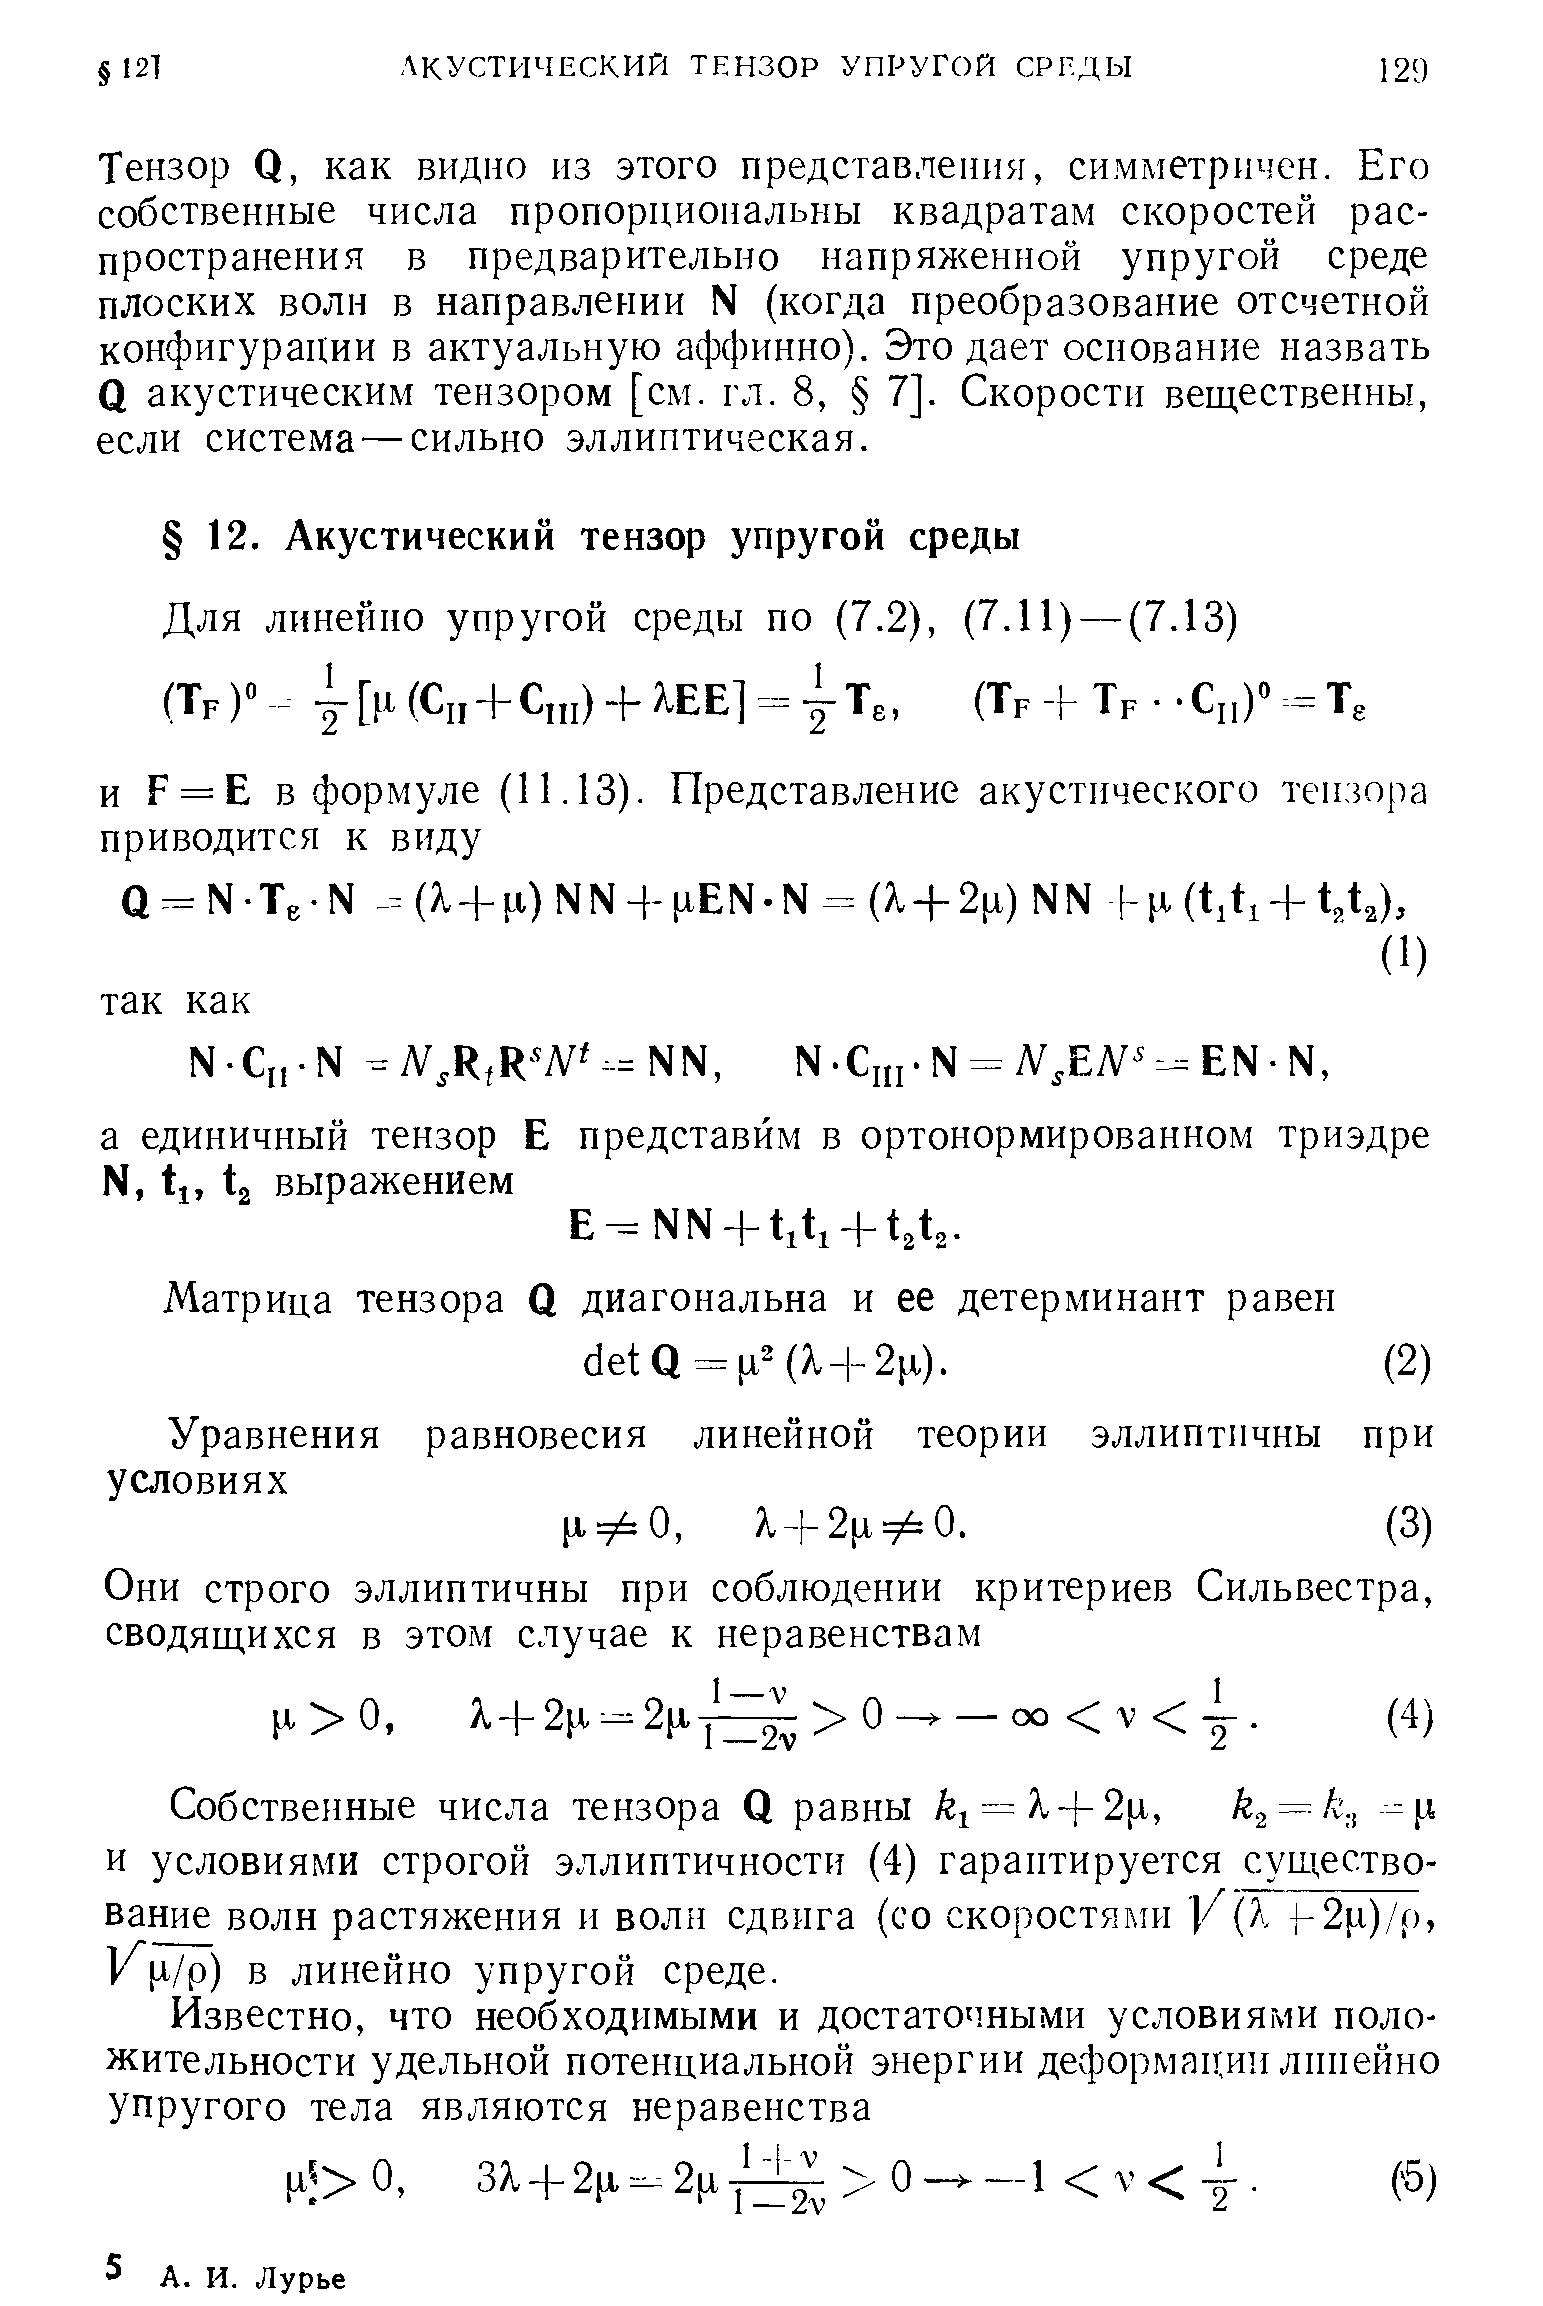 Собственные числа тензора О равны 1 = к + 2[х, и условиями строгой эллиптичности (4) гарантируется шествование волн растяжения и волн сдвига (со скоростями У Х 2[,1)/р, К[17р) в линейно упругой среде.
